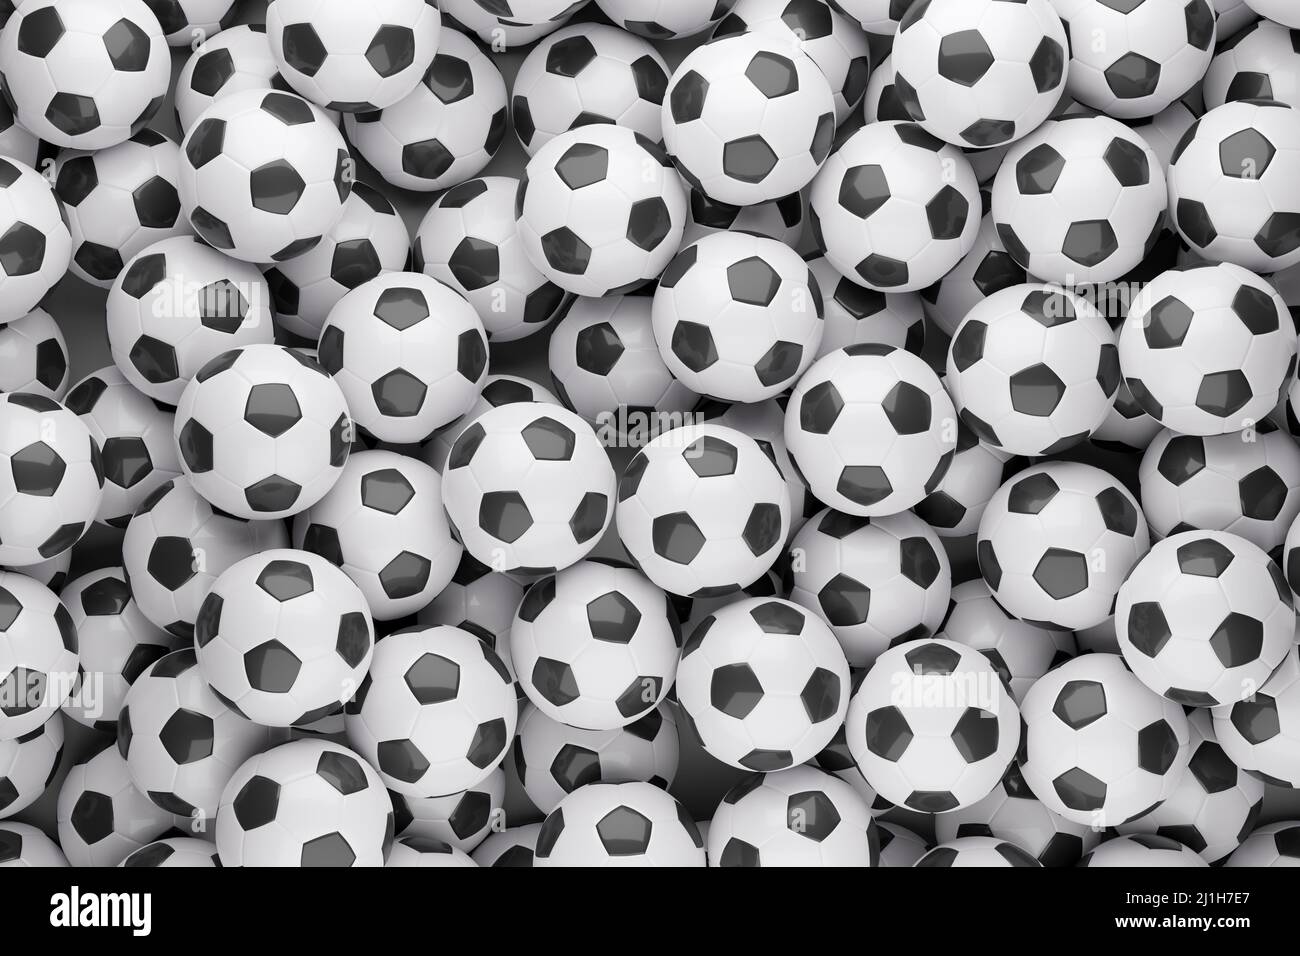 Fond noir et blanc de ballons de football. Vue de dessus. 3d illustration. Banque D'Images